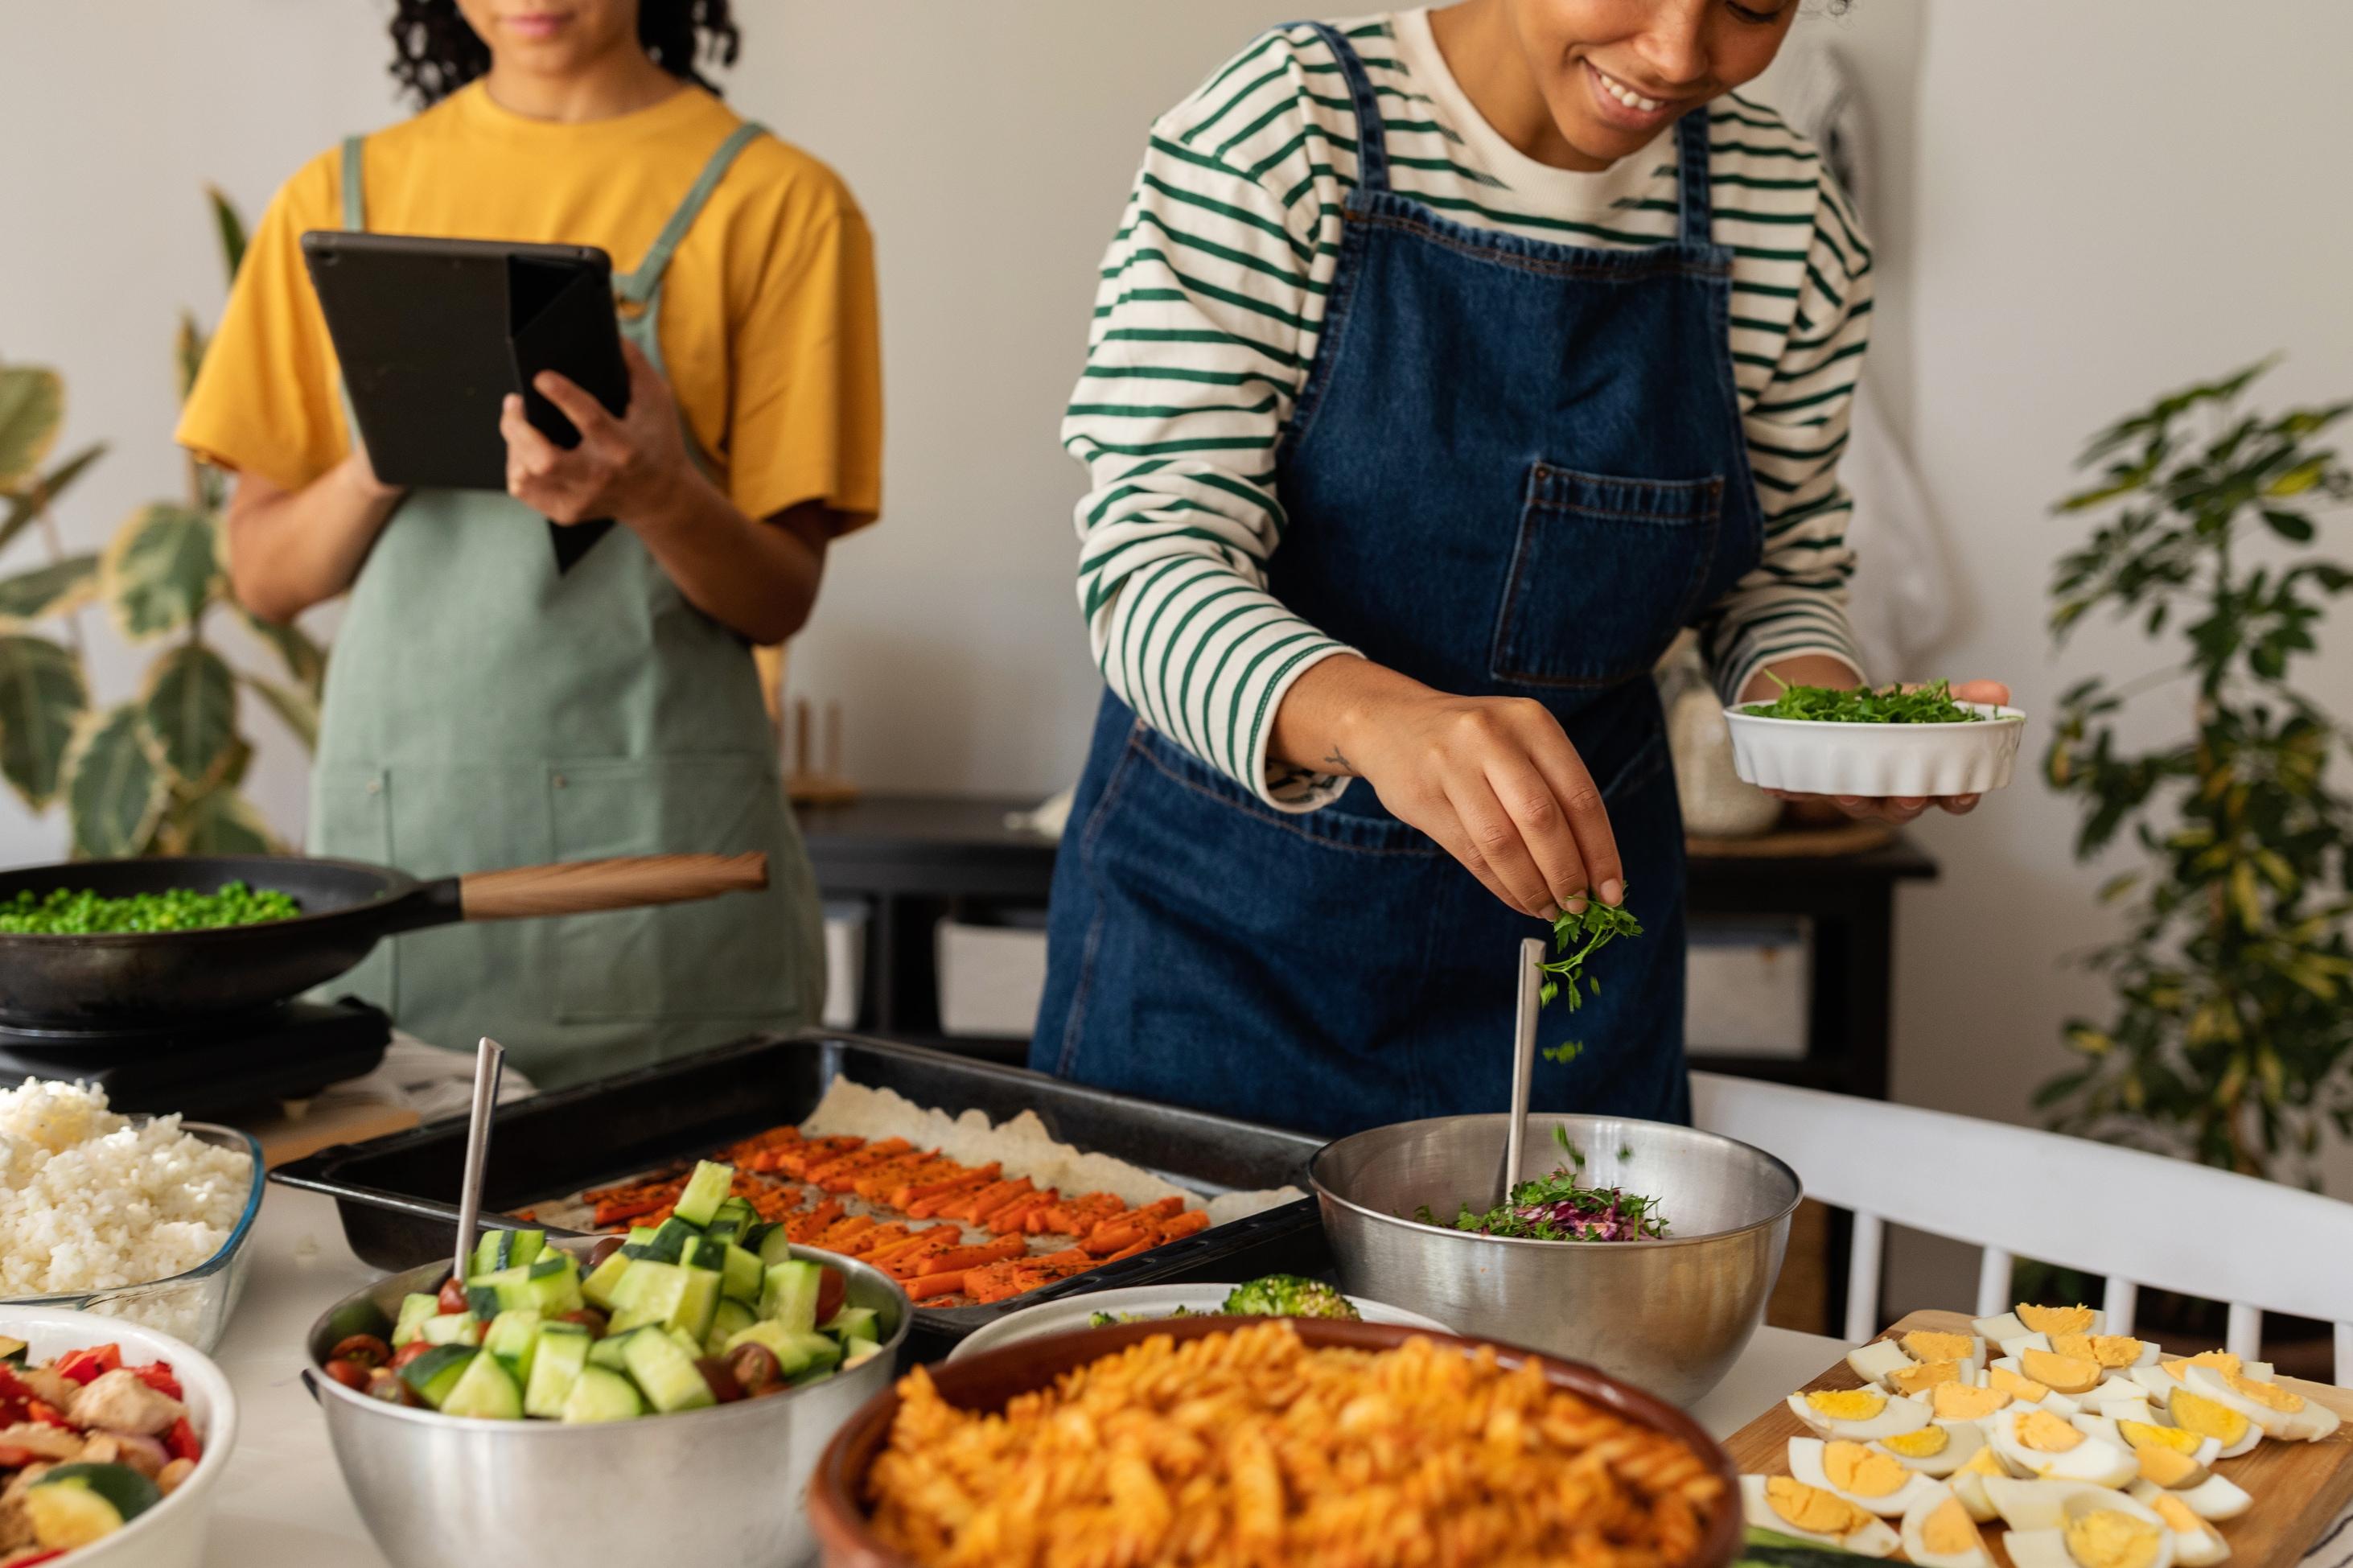 Deux femmes, l’une tenant une tablette, l’autre tenant du persil, sourient pendant qu’elles cuisinent devant un comptoir rempli de salades, de poivrons rouges grillés, de légumes sautés et d’œufs.